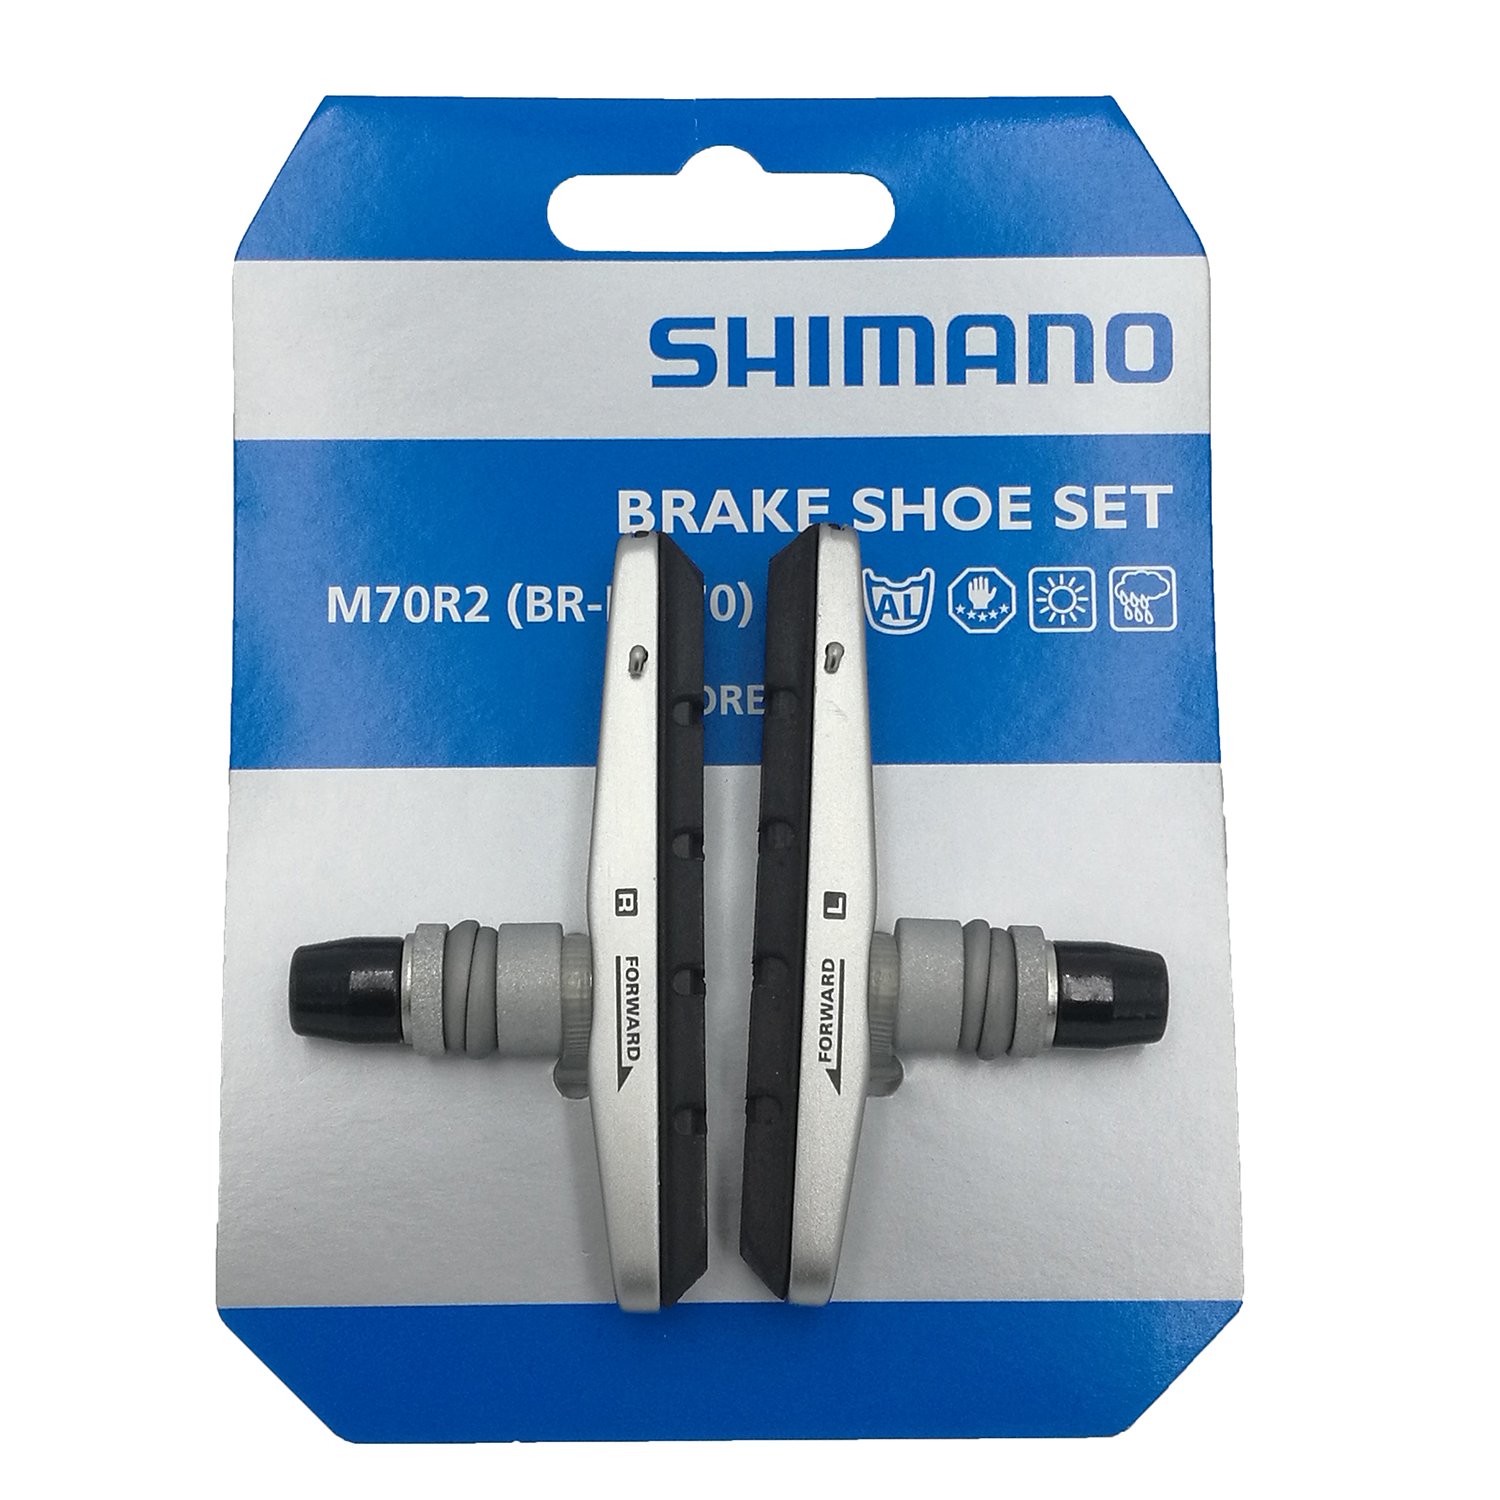 Тормозные колодки SHIMANO для v-brake M70R2, картриджные комплект к br-m770 Y8EM9802A комплект оборудования falcon eyes bloggerkit 16 для видеосъемки